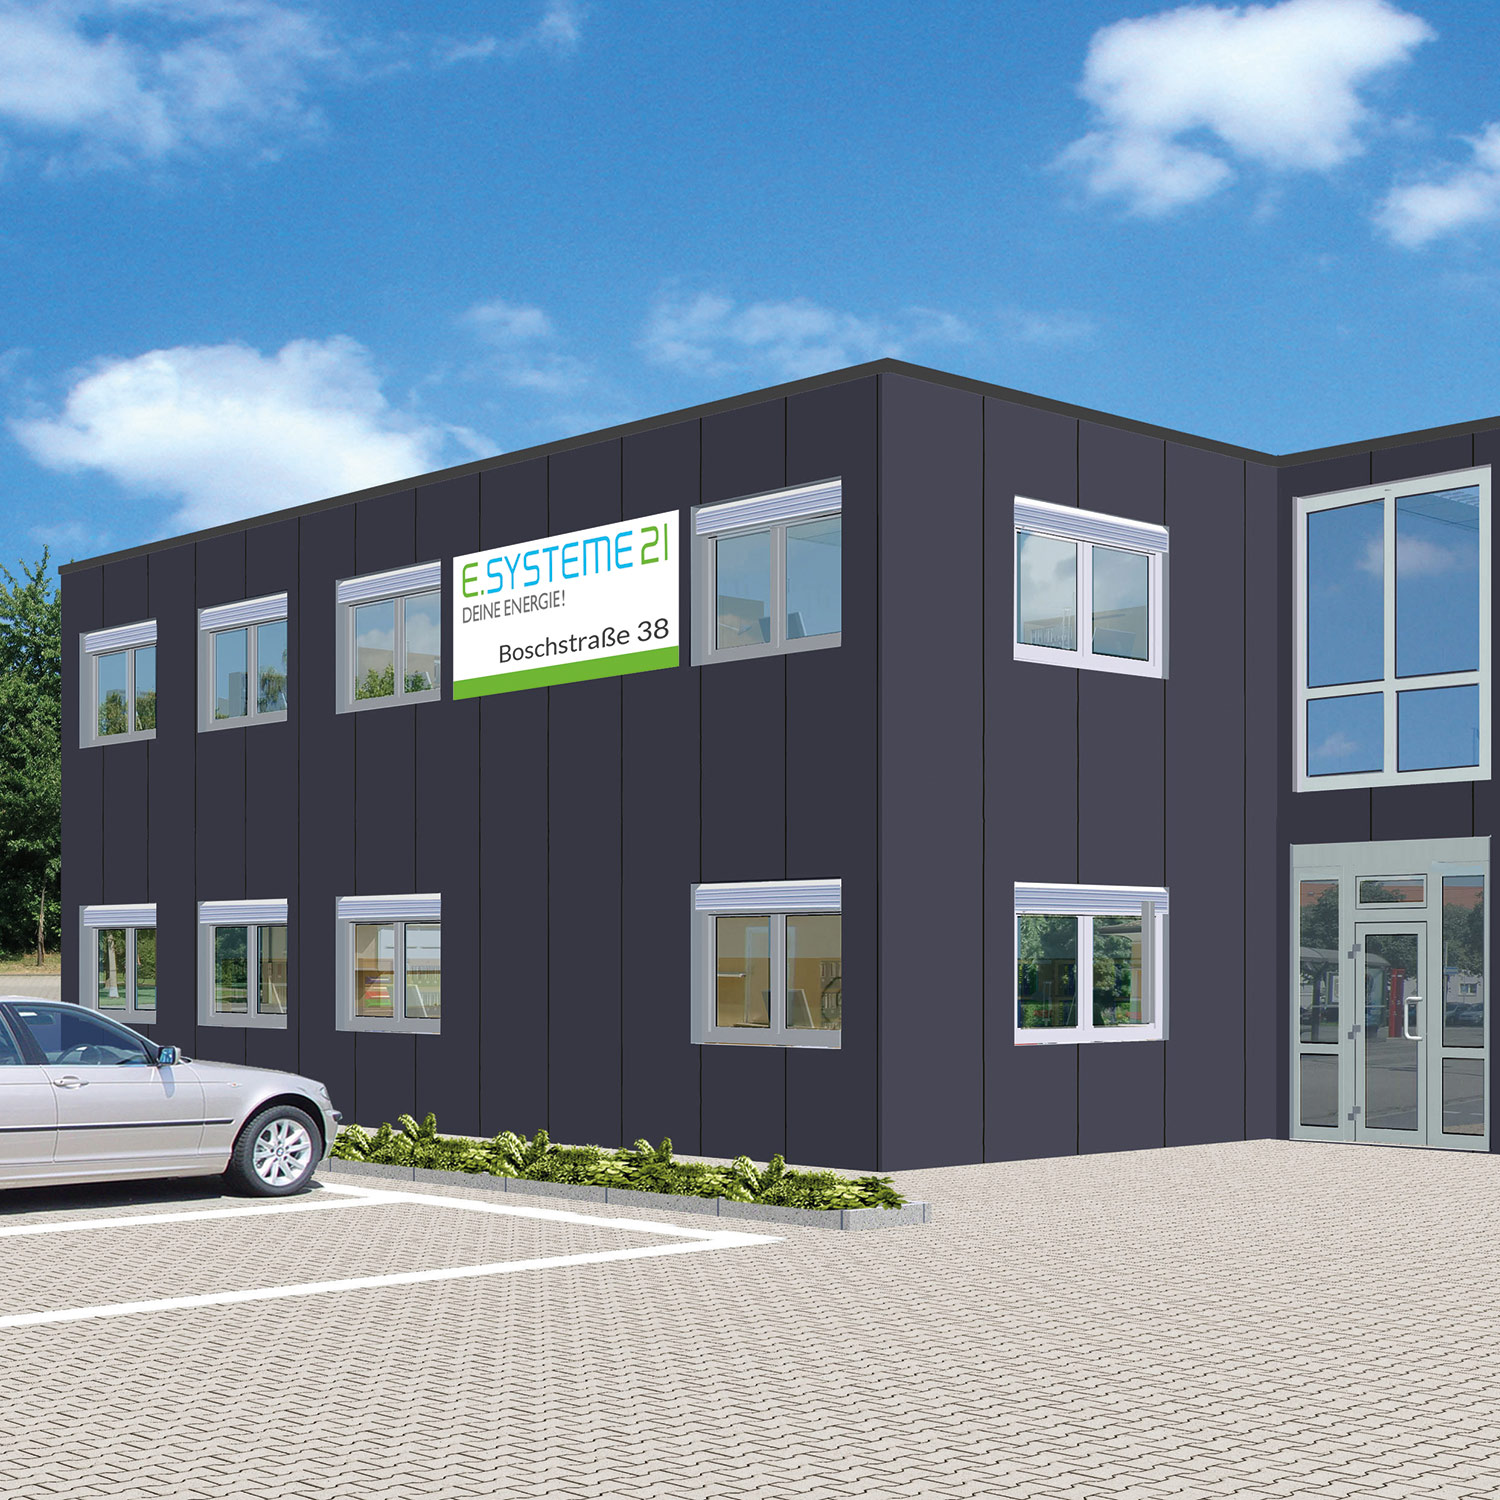 Visualisierung neues Firmengebäude e.systeme21 GmbH